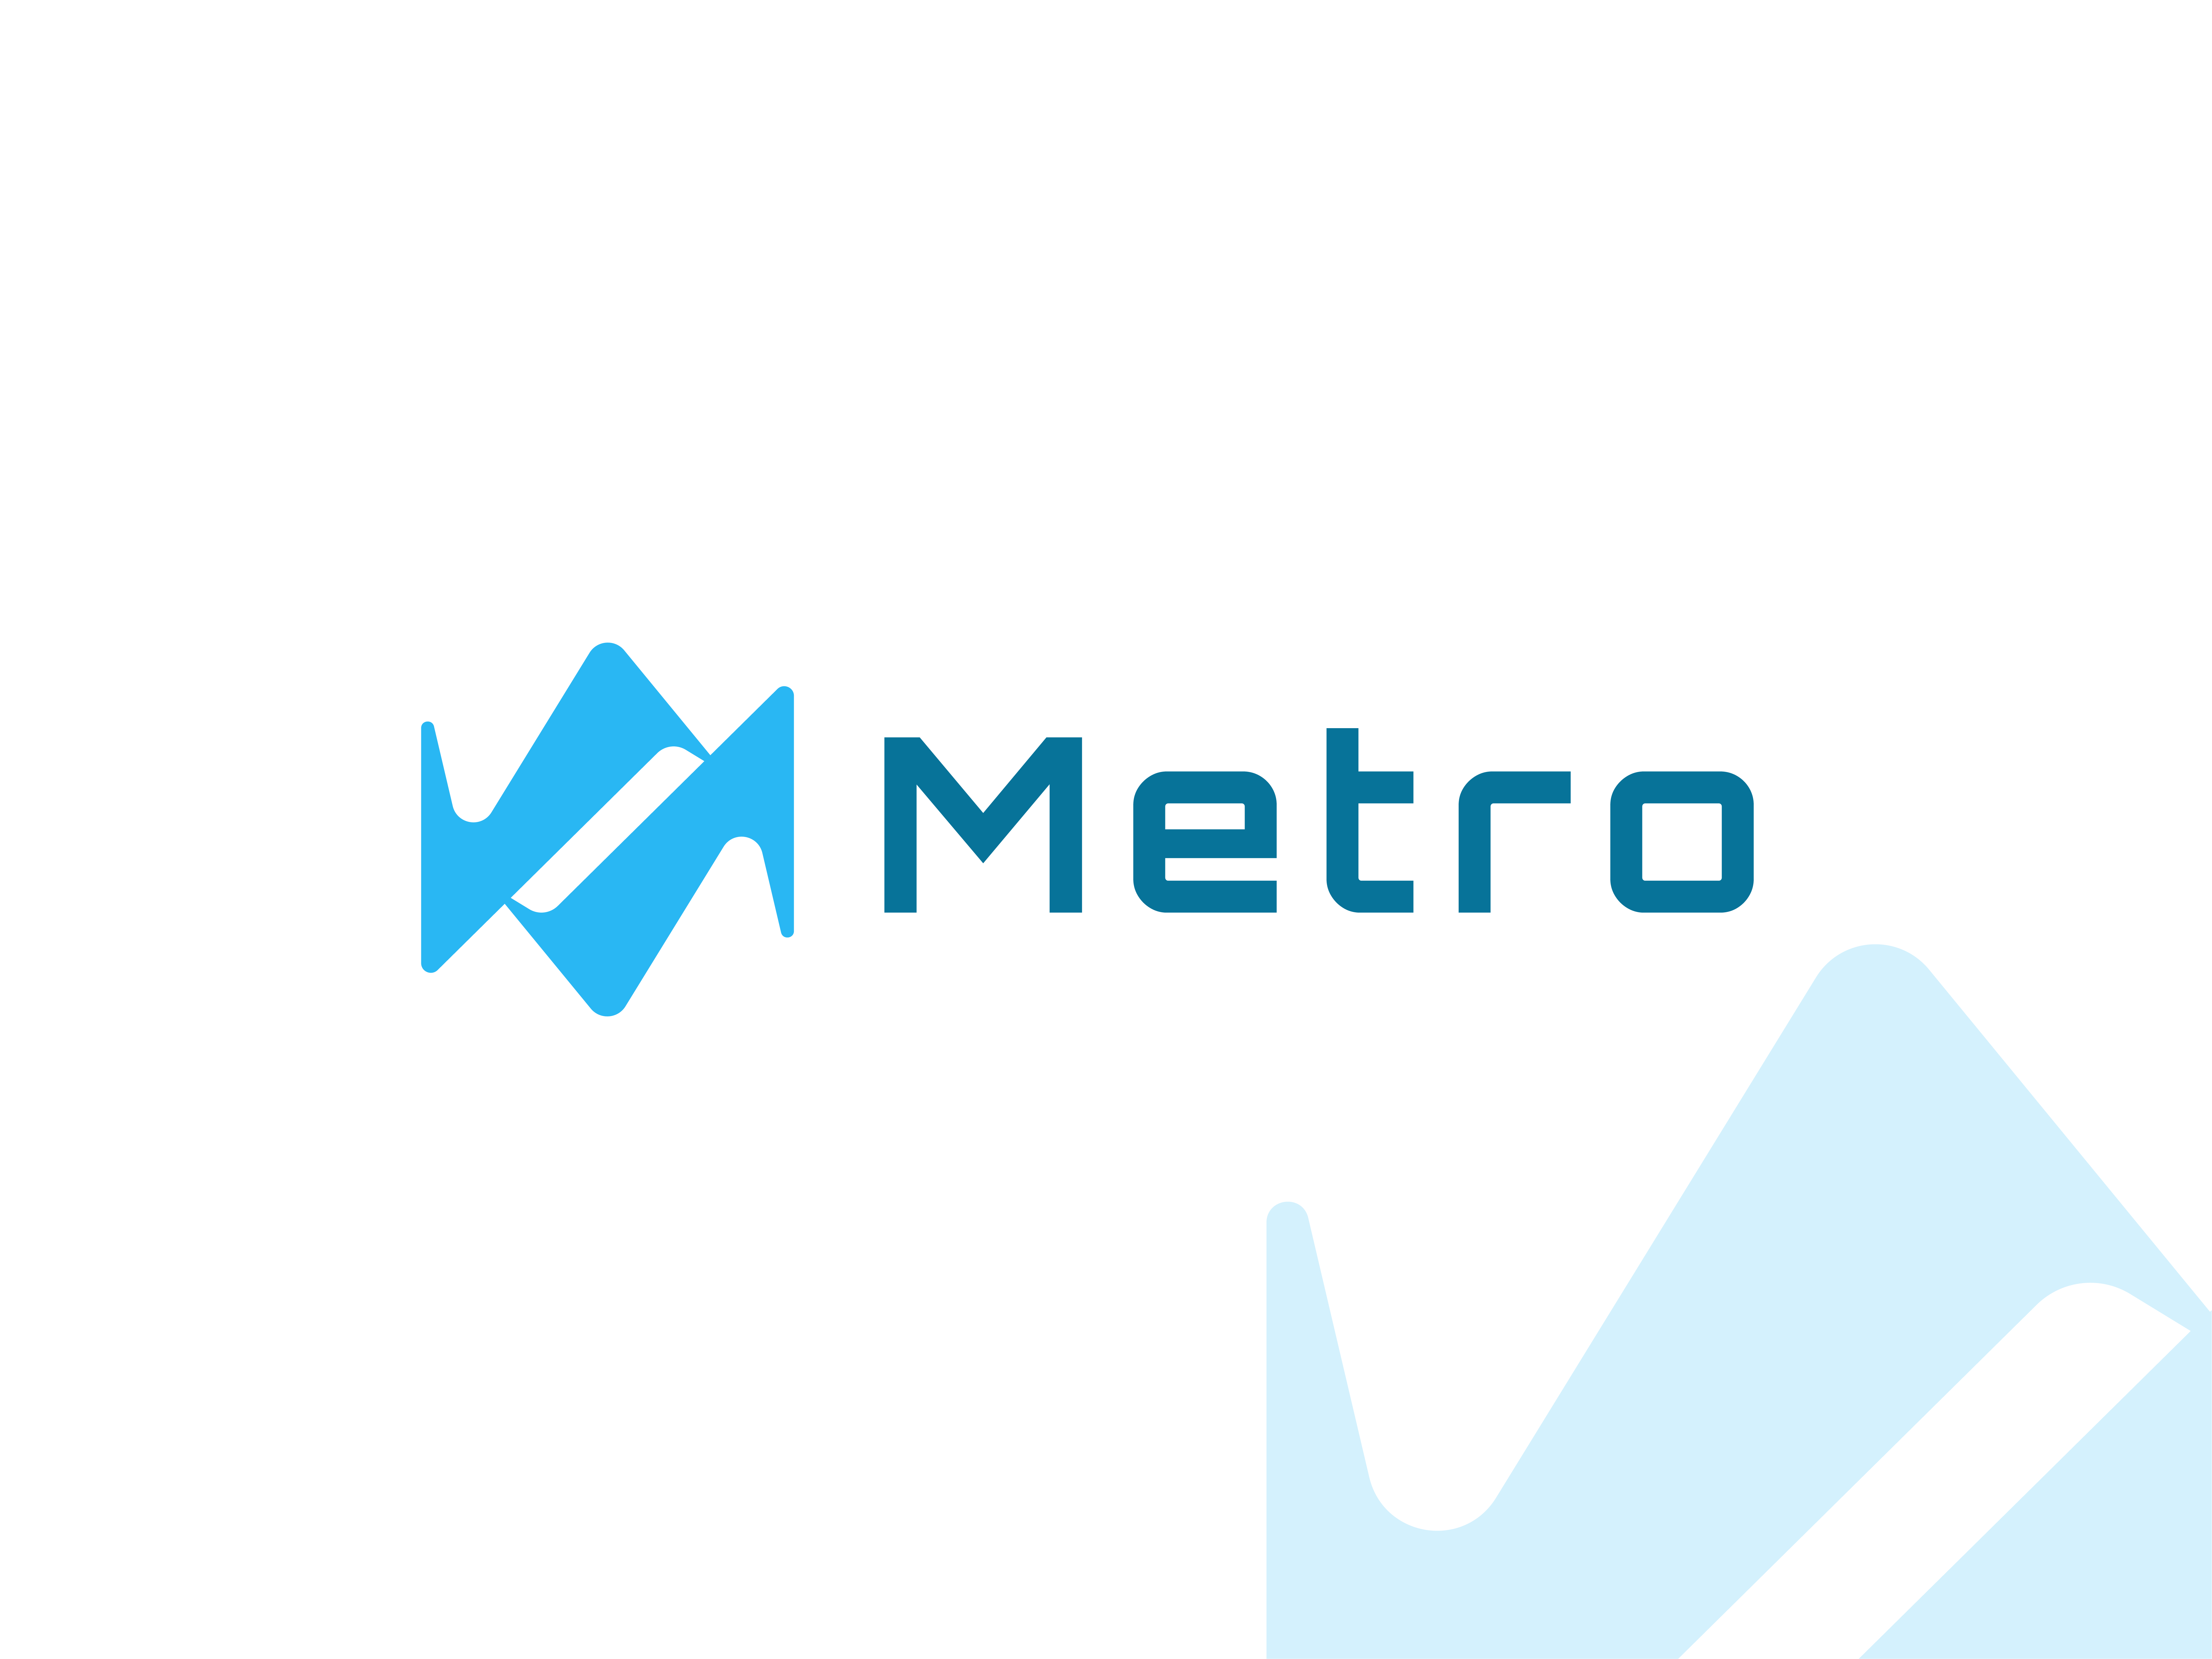 Fake Metro Logos by NyanCat06 on DeviantArt